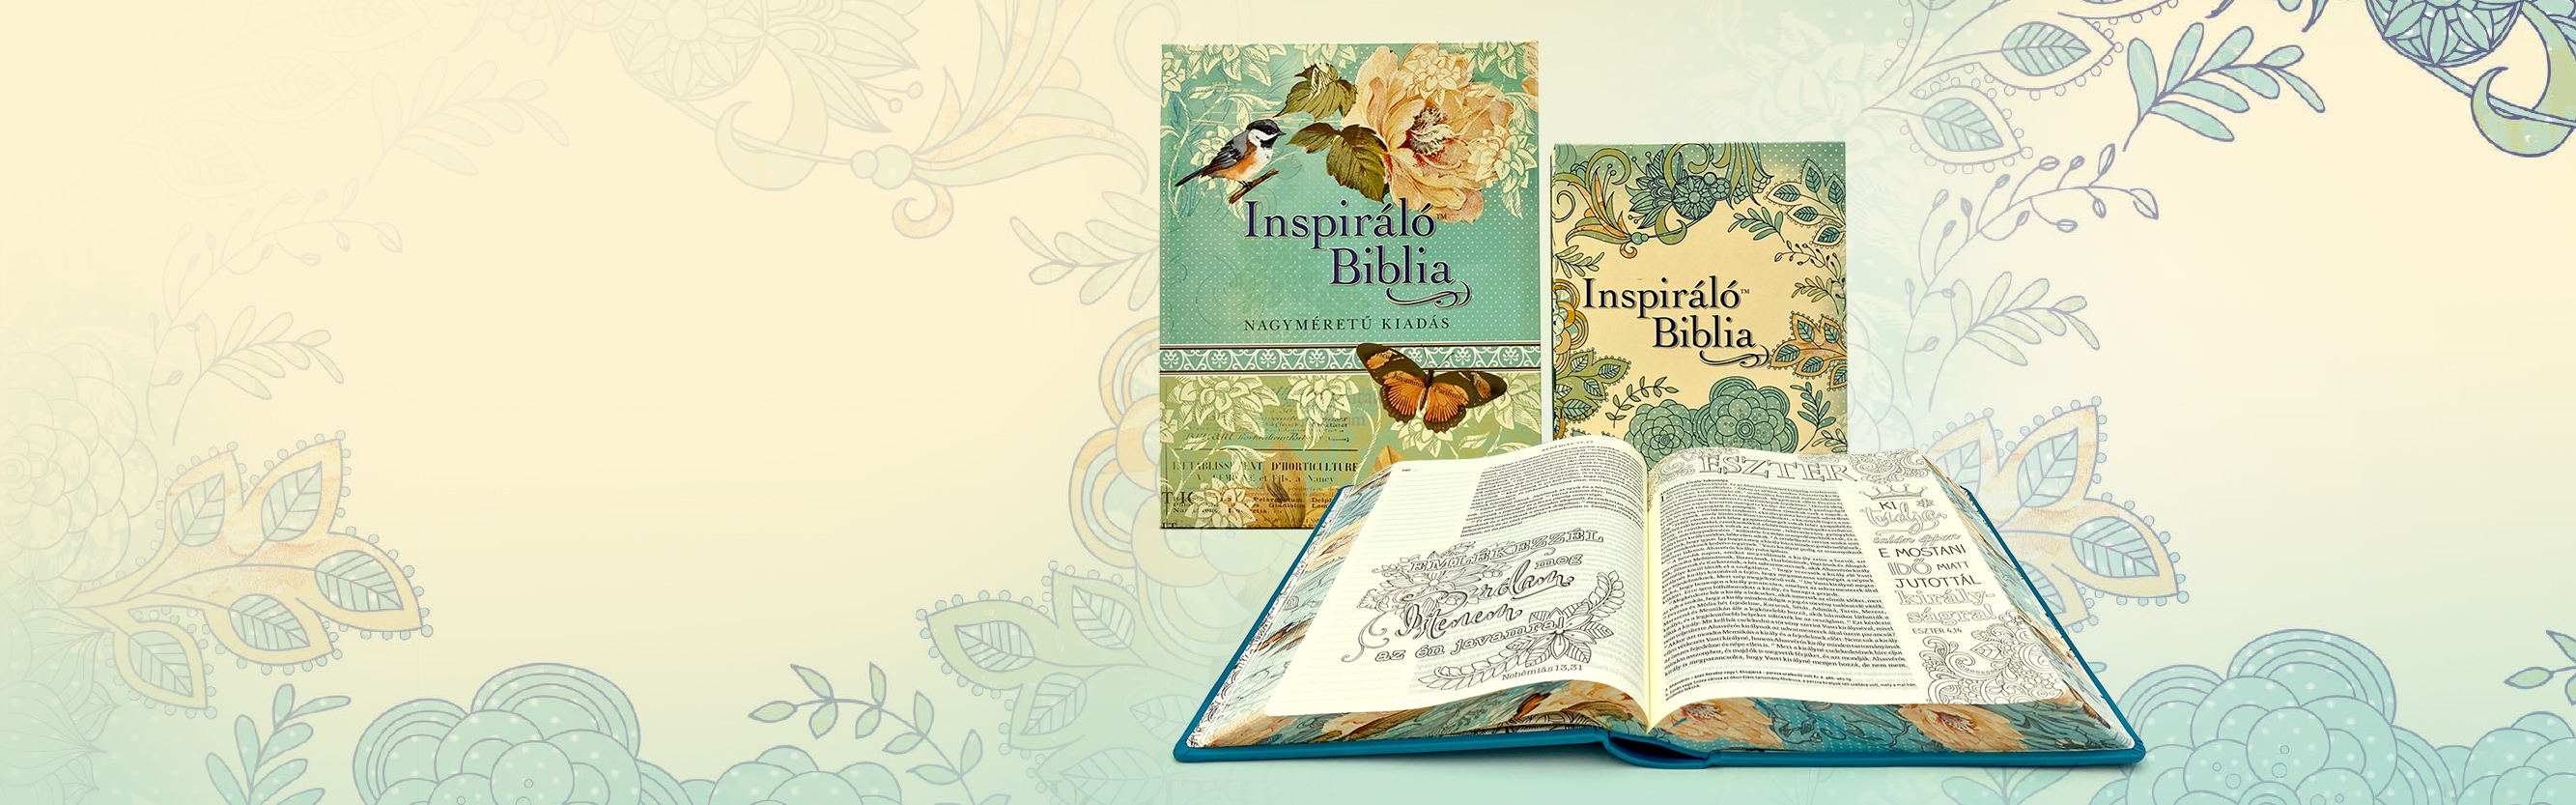 Új Inspiráló Biblia banner